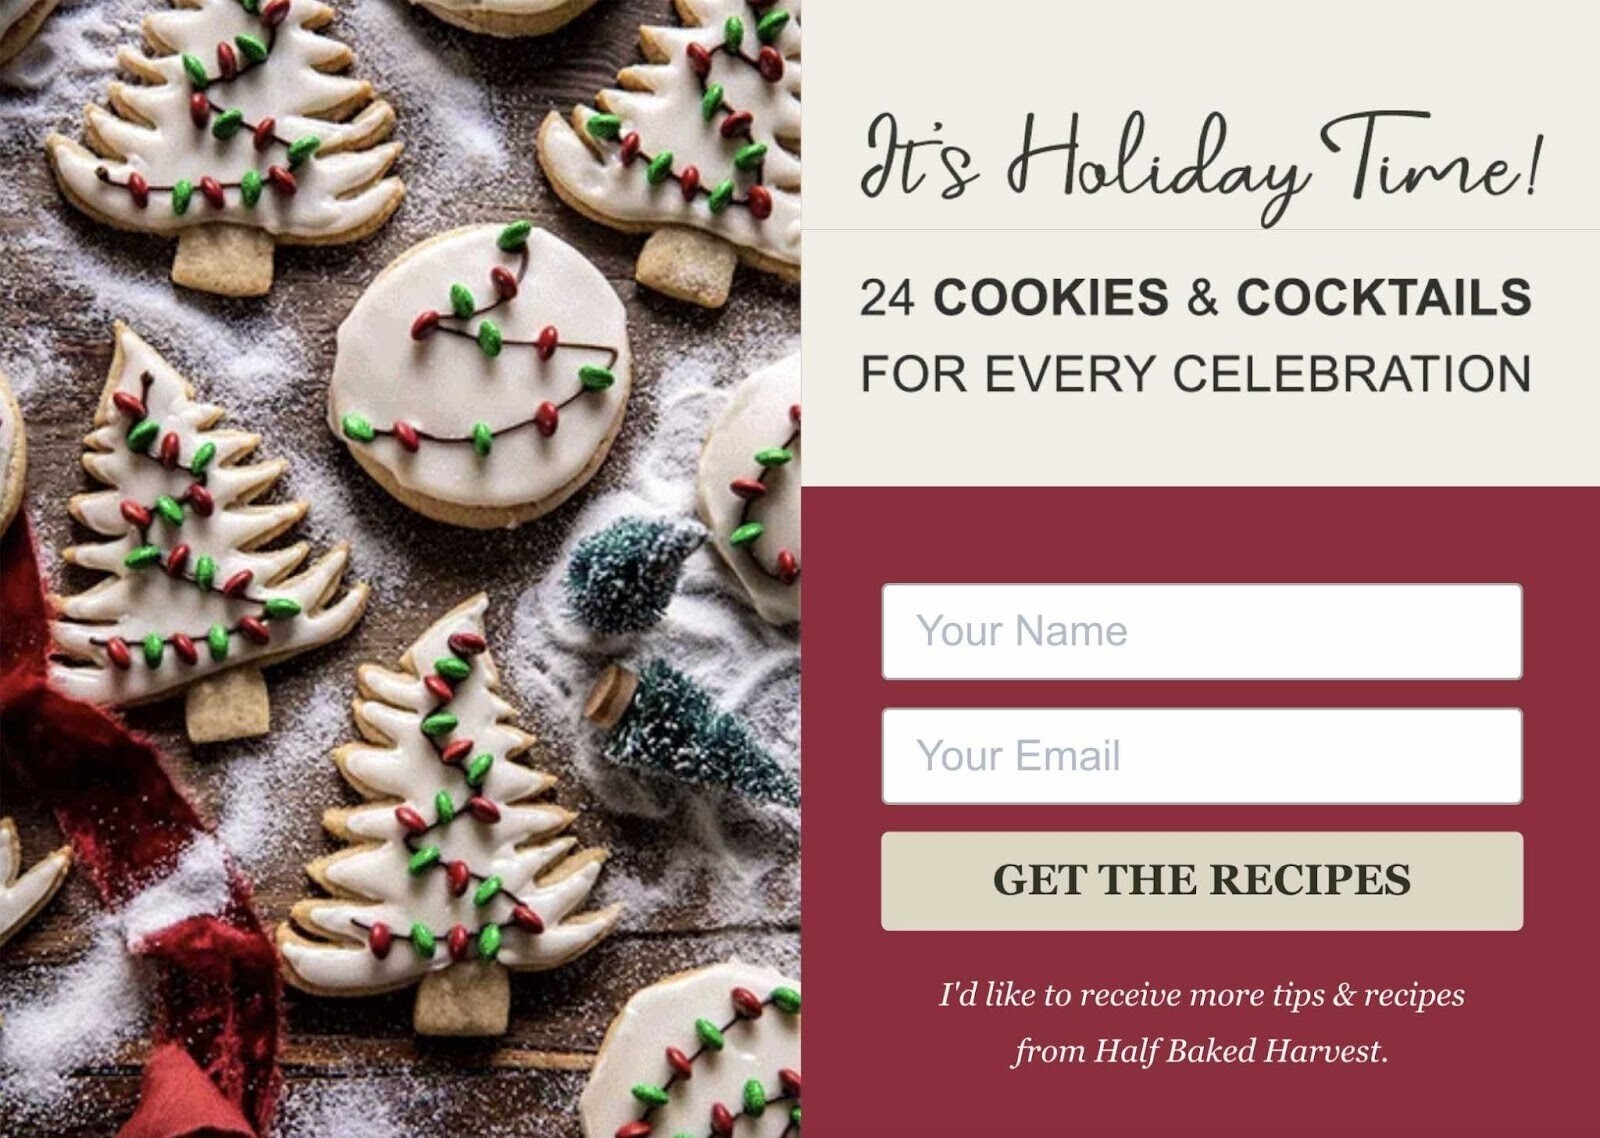 Half Baked Harvest email marketing